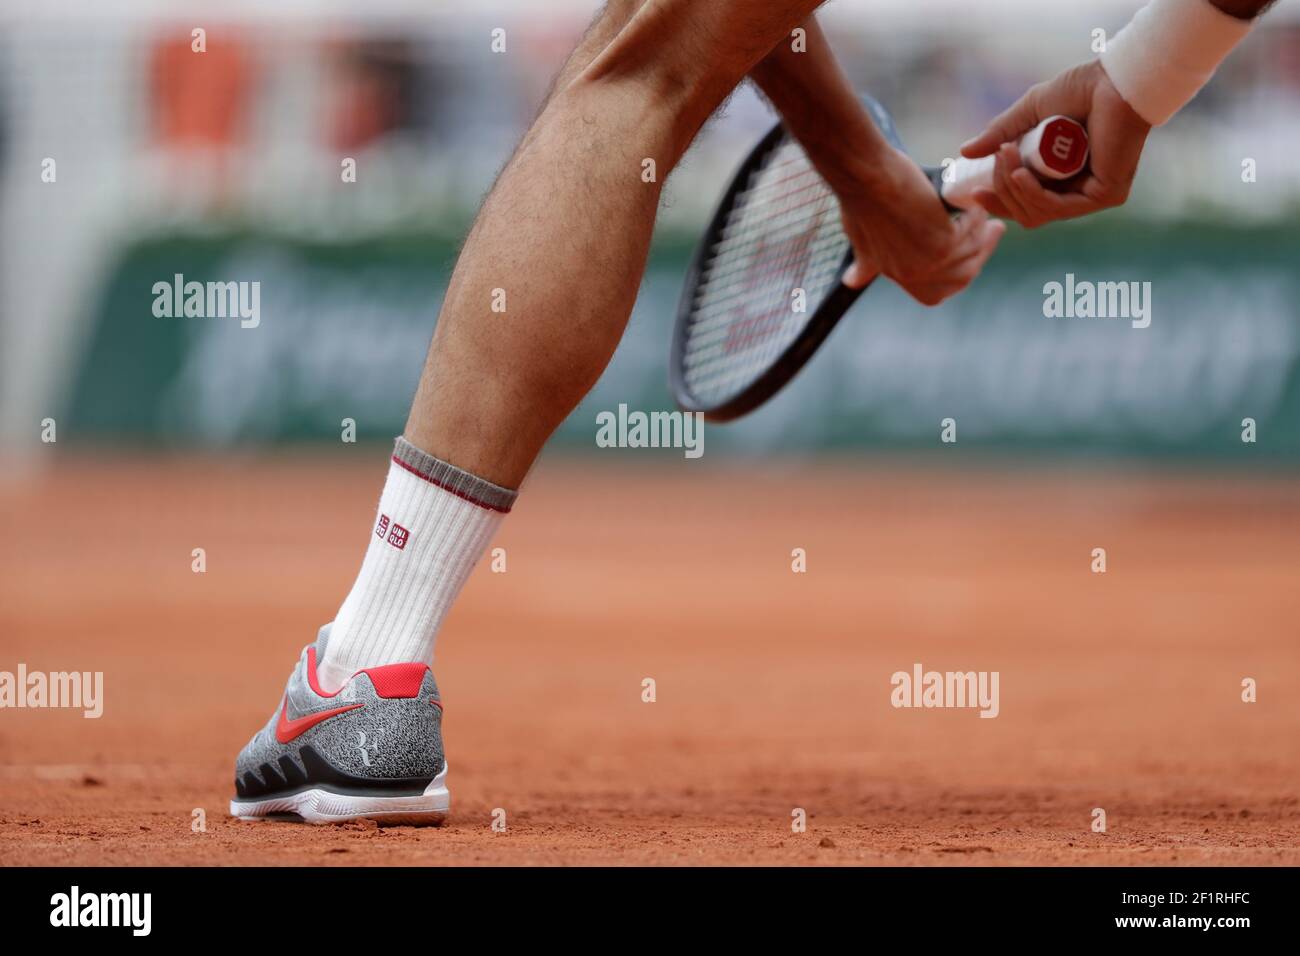 Ilustración de las zapatillas Nike Air Zoom vapor 2019 de Roger FEDERER (sui) durante el Roland-Garros Grand Slam Tennis Tournament, sorteo masculino el 4 junio de 2019 en el